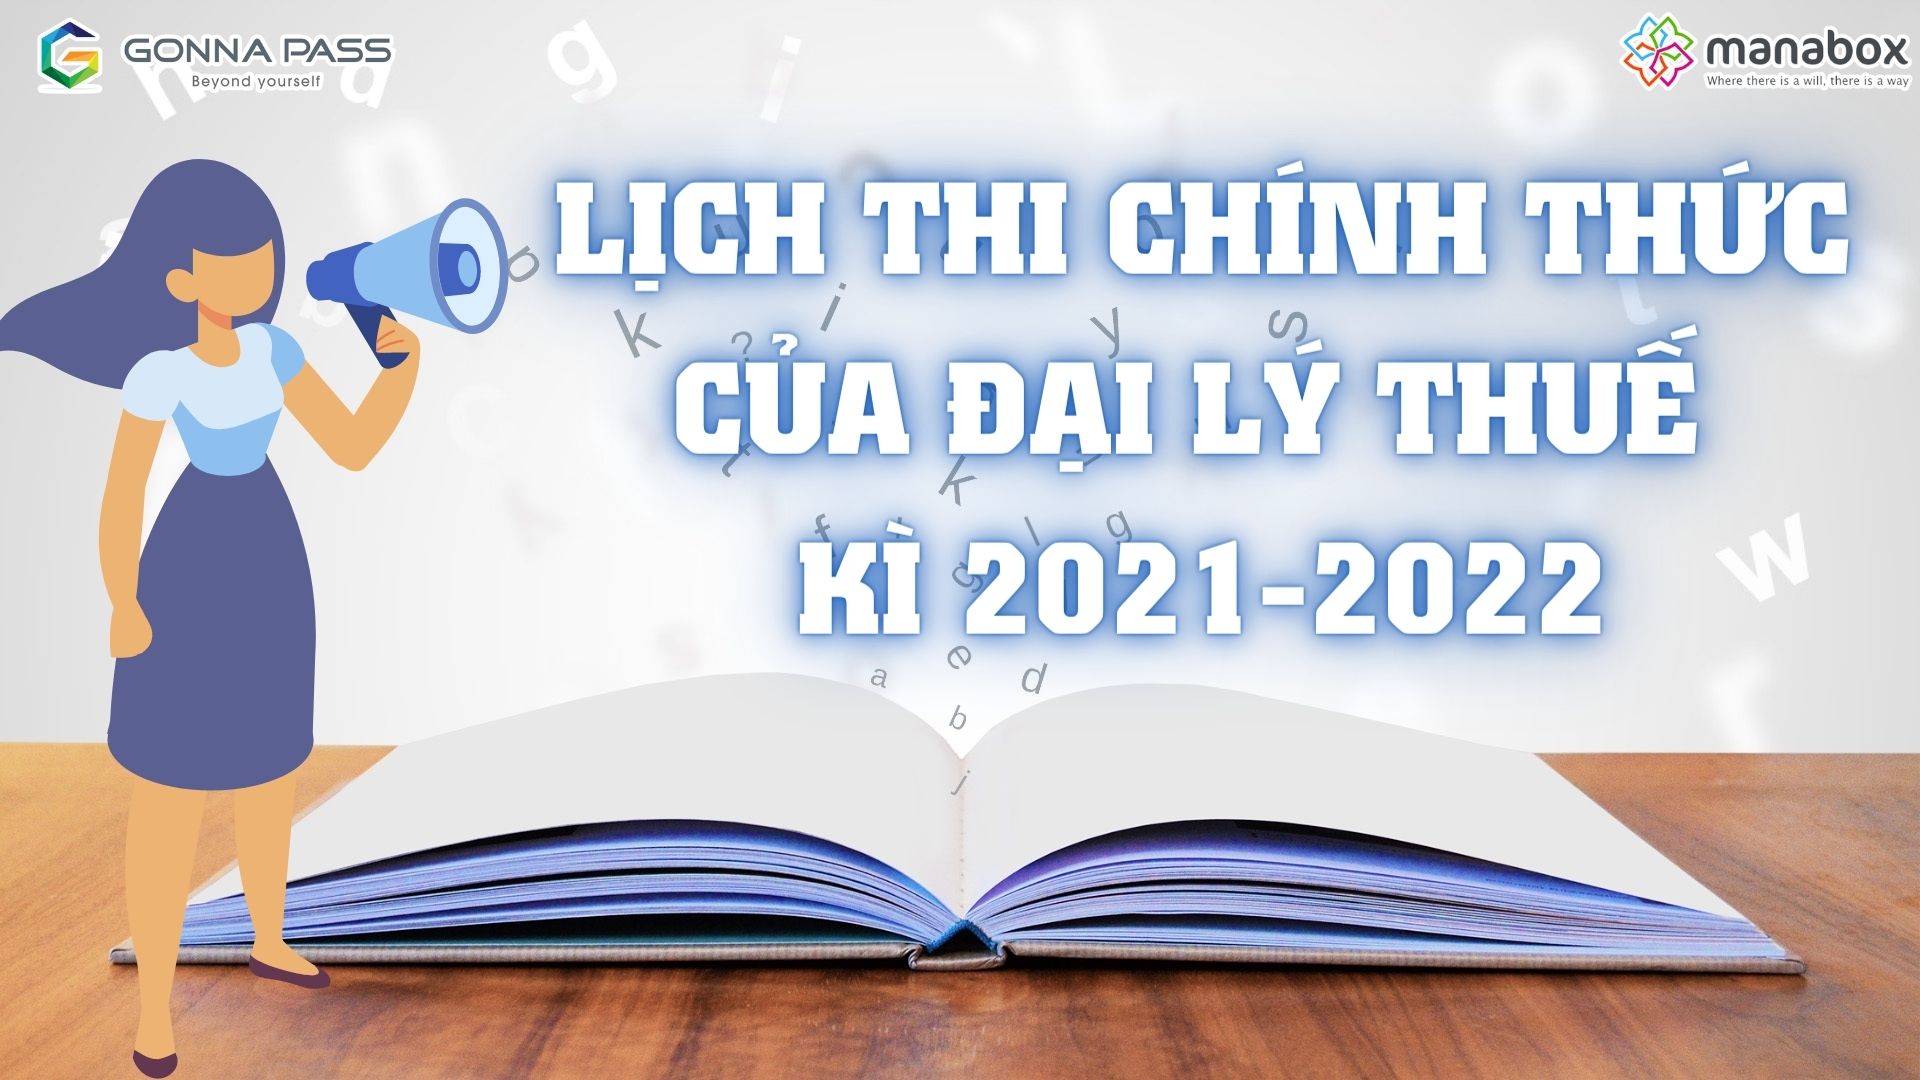 Lịch thi chính thức của Đại lý Thuế kì 2021-2022